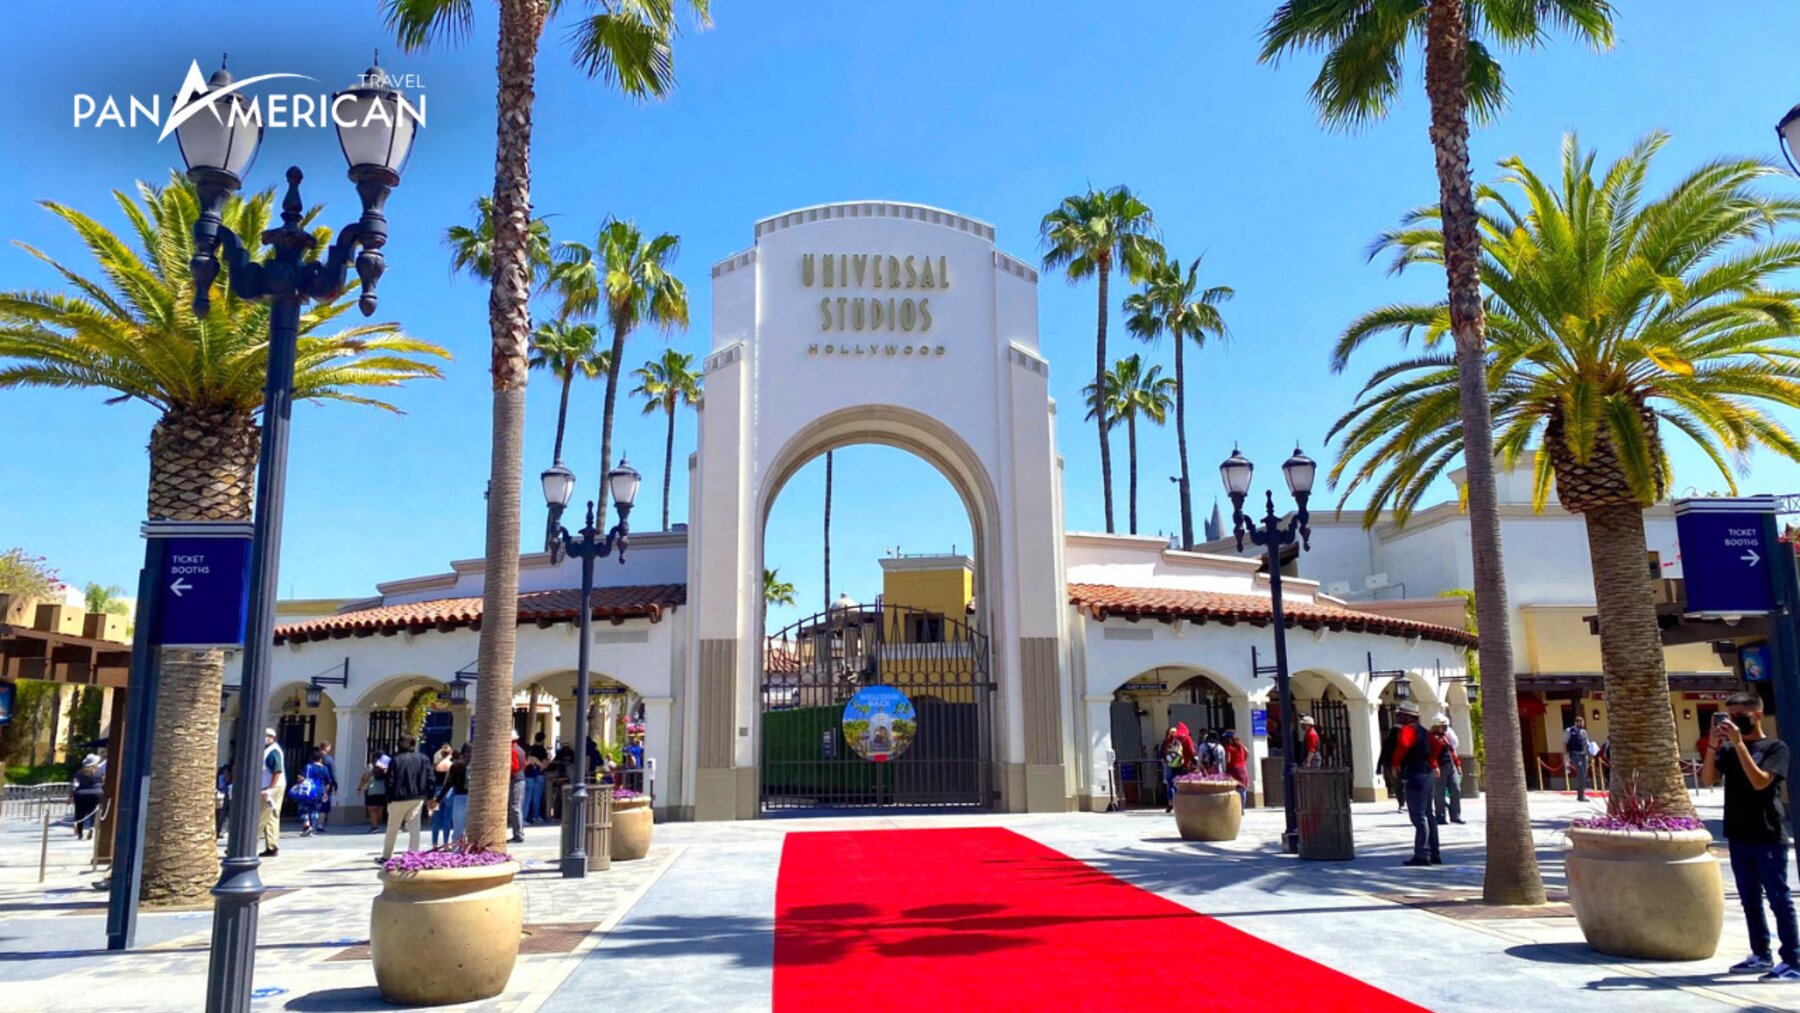 Phim trường Universal - Studio tỷ đô của Hollywood